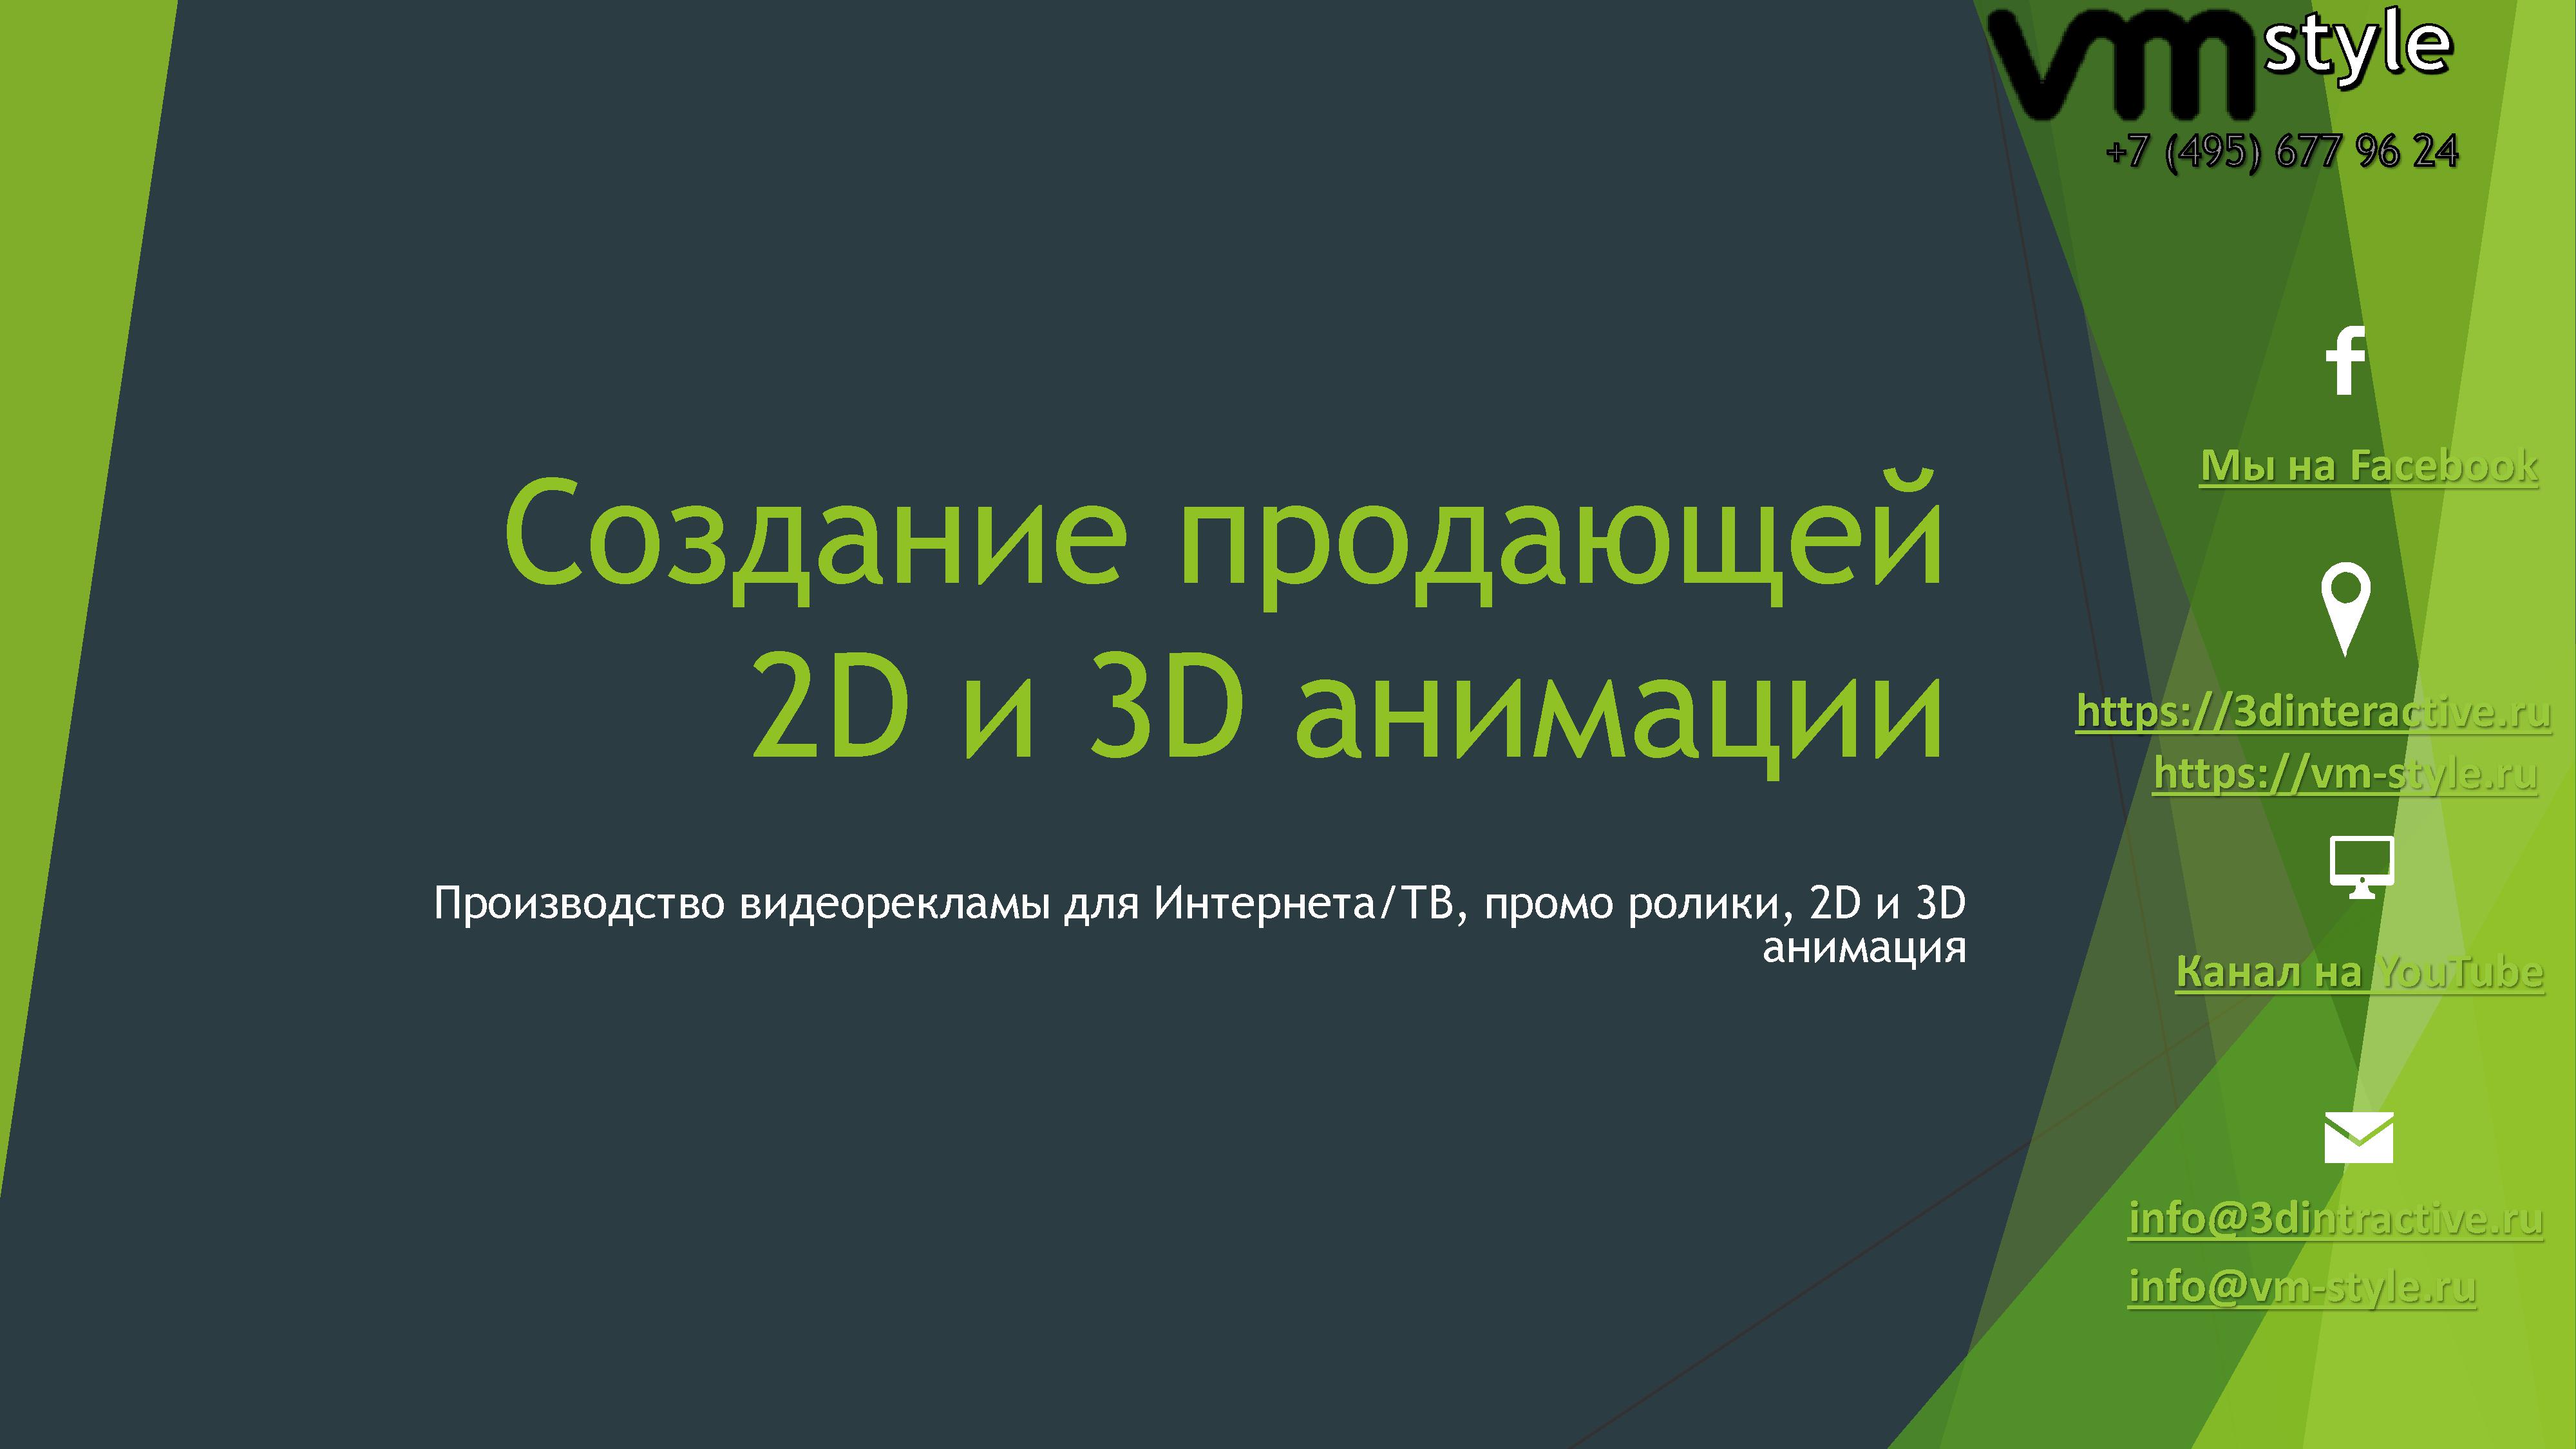 Студия 3D анимации VM style в городе Москва, фото 1, Прочее